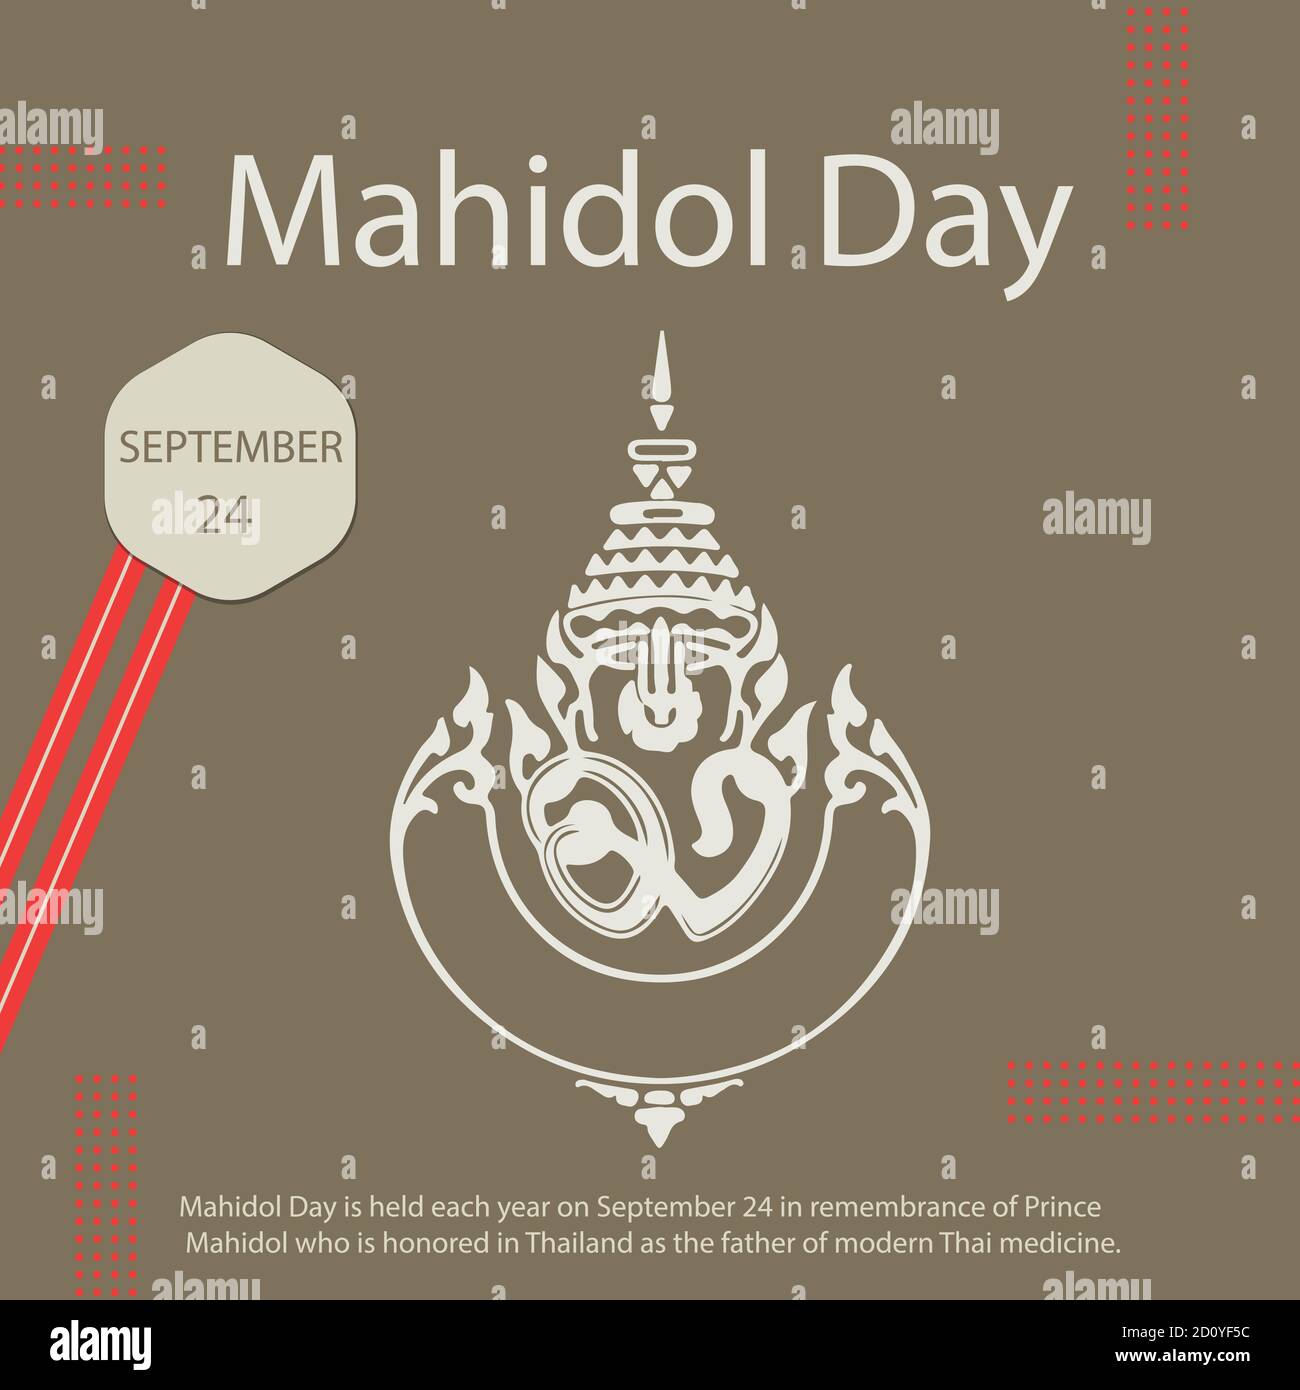 Der Mahidol Day findet jedes Jahr am 24. September statt, um an Prinz Mahidol zu erinnern, der in Thailand als Vater der modernen thailändischen Medizin geehrt wird. Stock Vektor